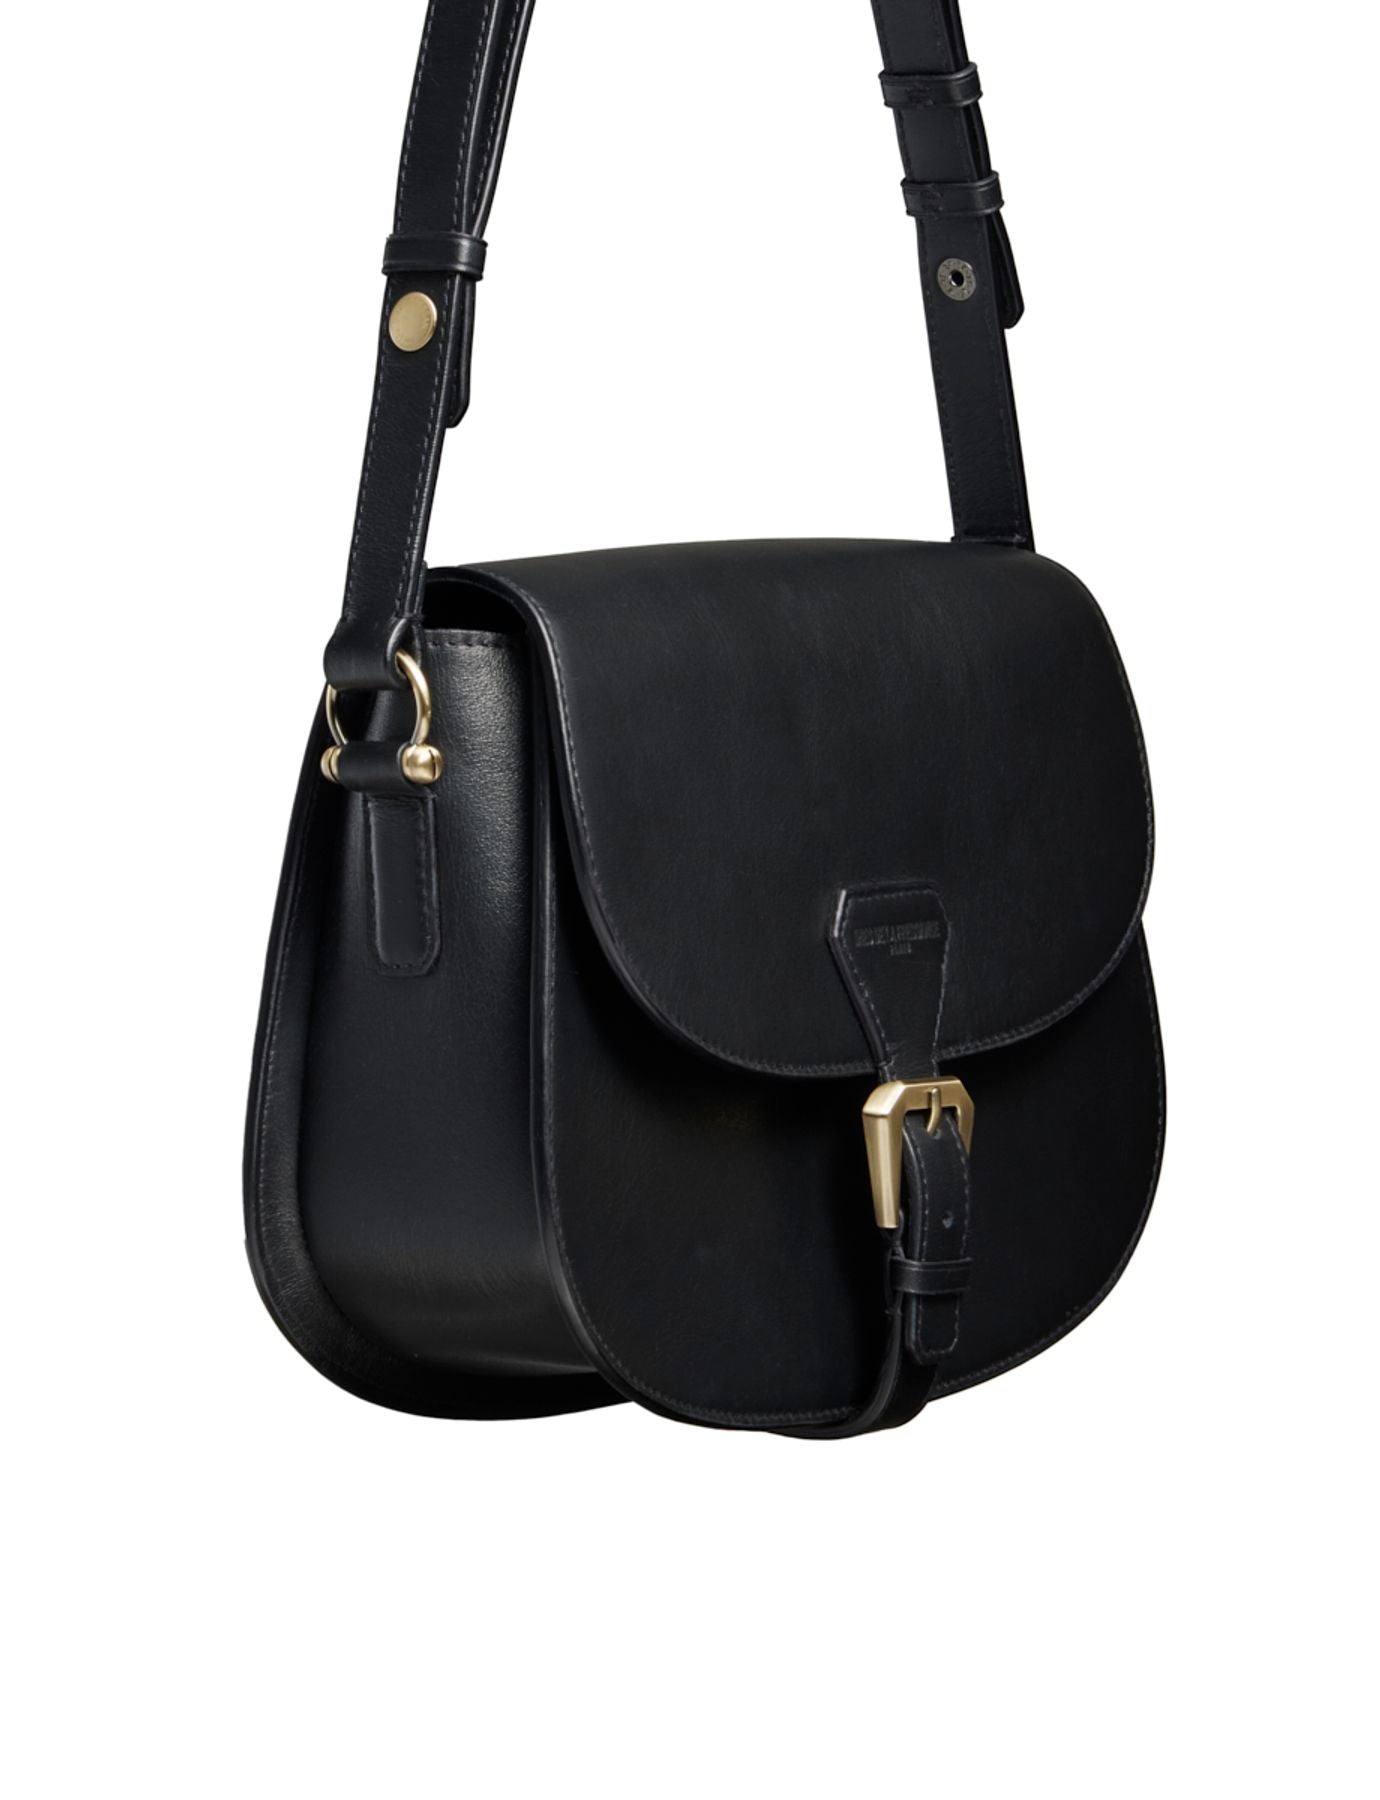 leather-black bag